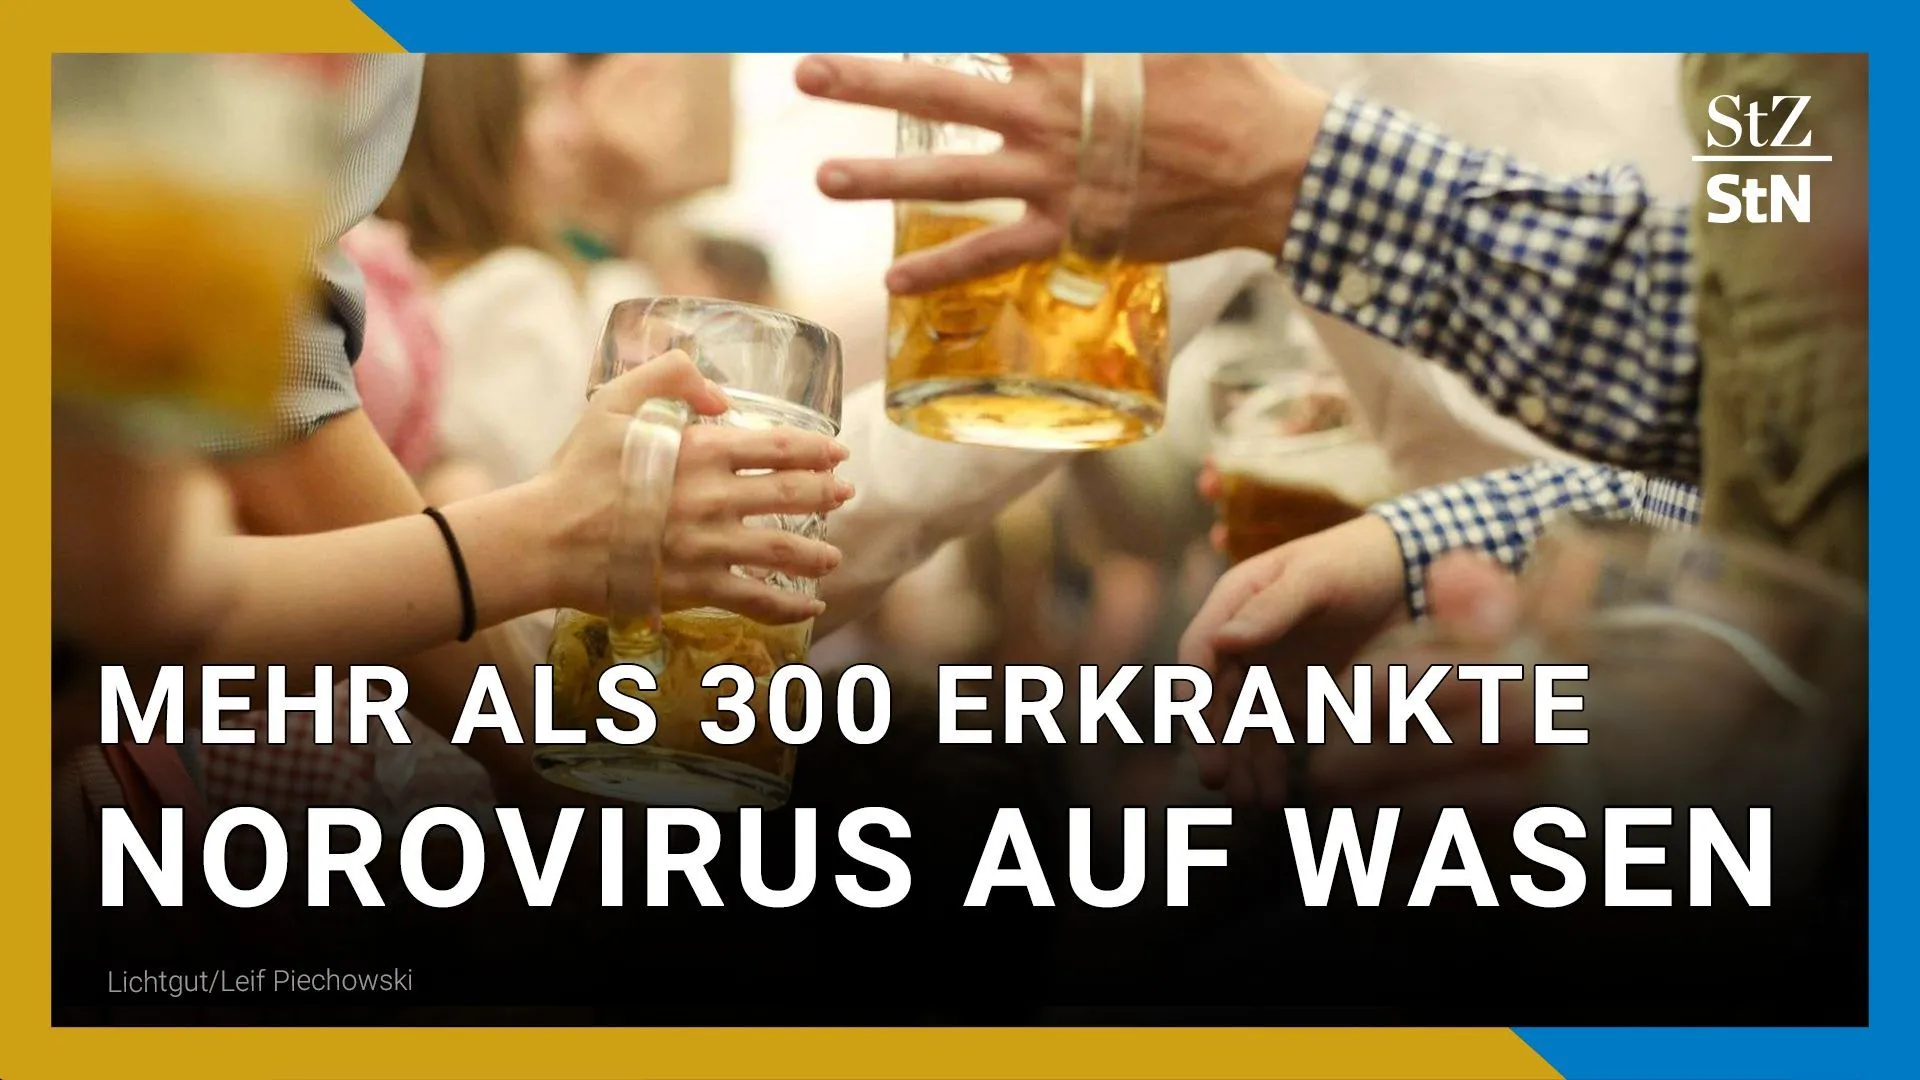 Norovirus bij Wasen | Massa's ziektes na bezoek Lentefeest Stuttgart